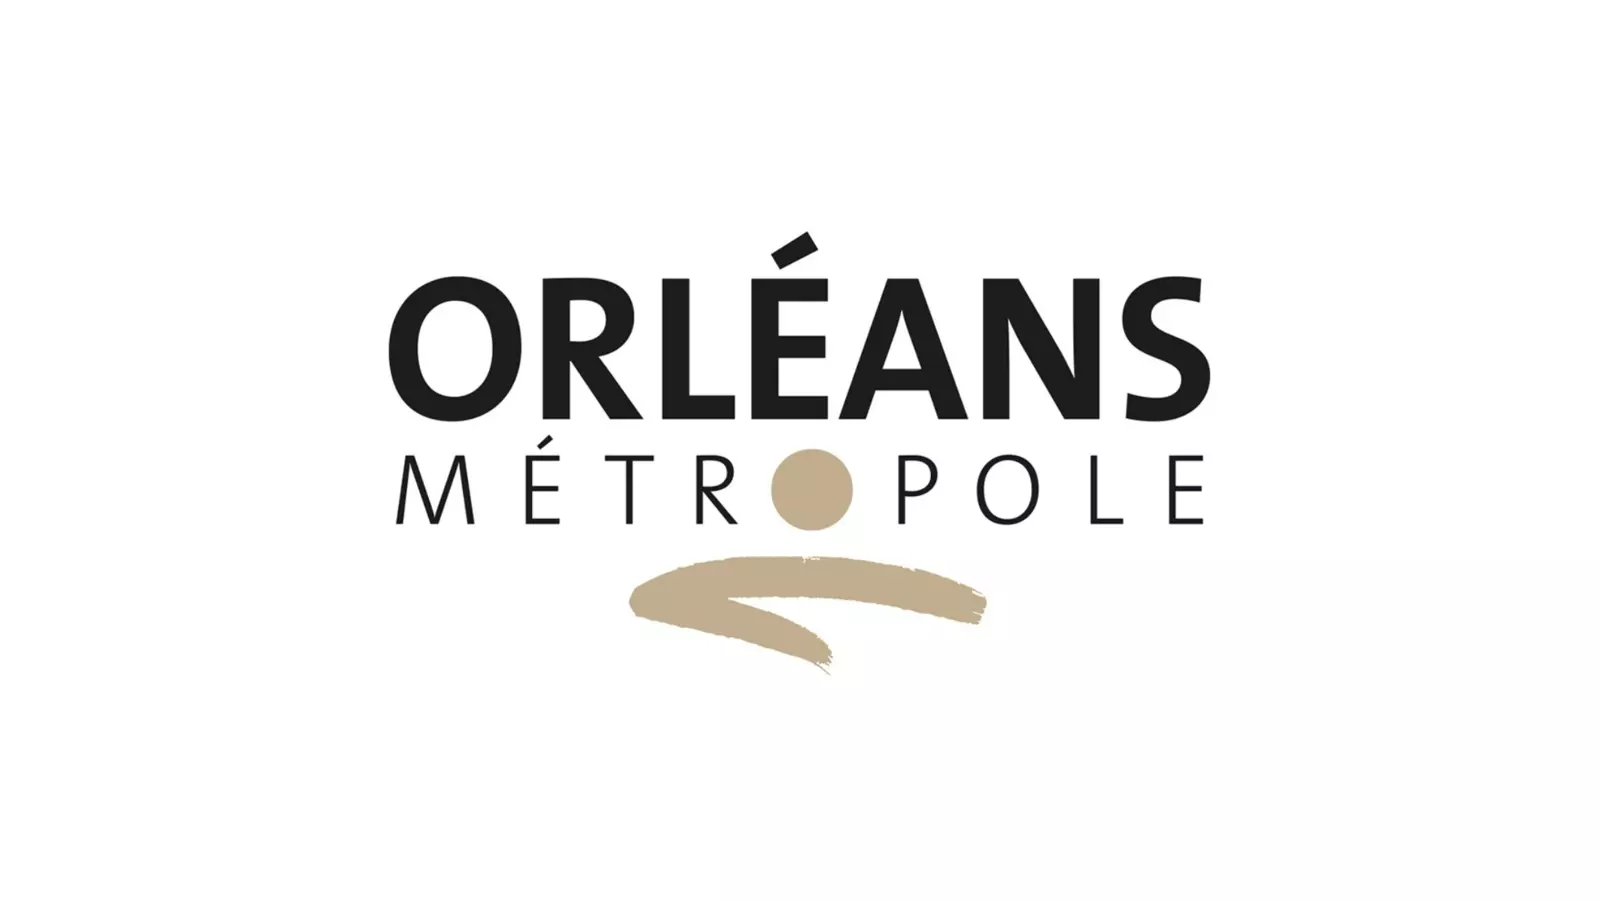 Témoignages sur la transformation digitale - La Métropole d'Orléans